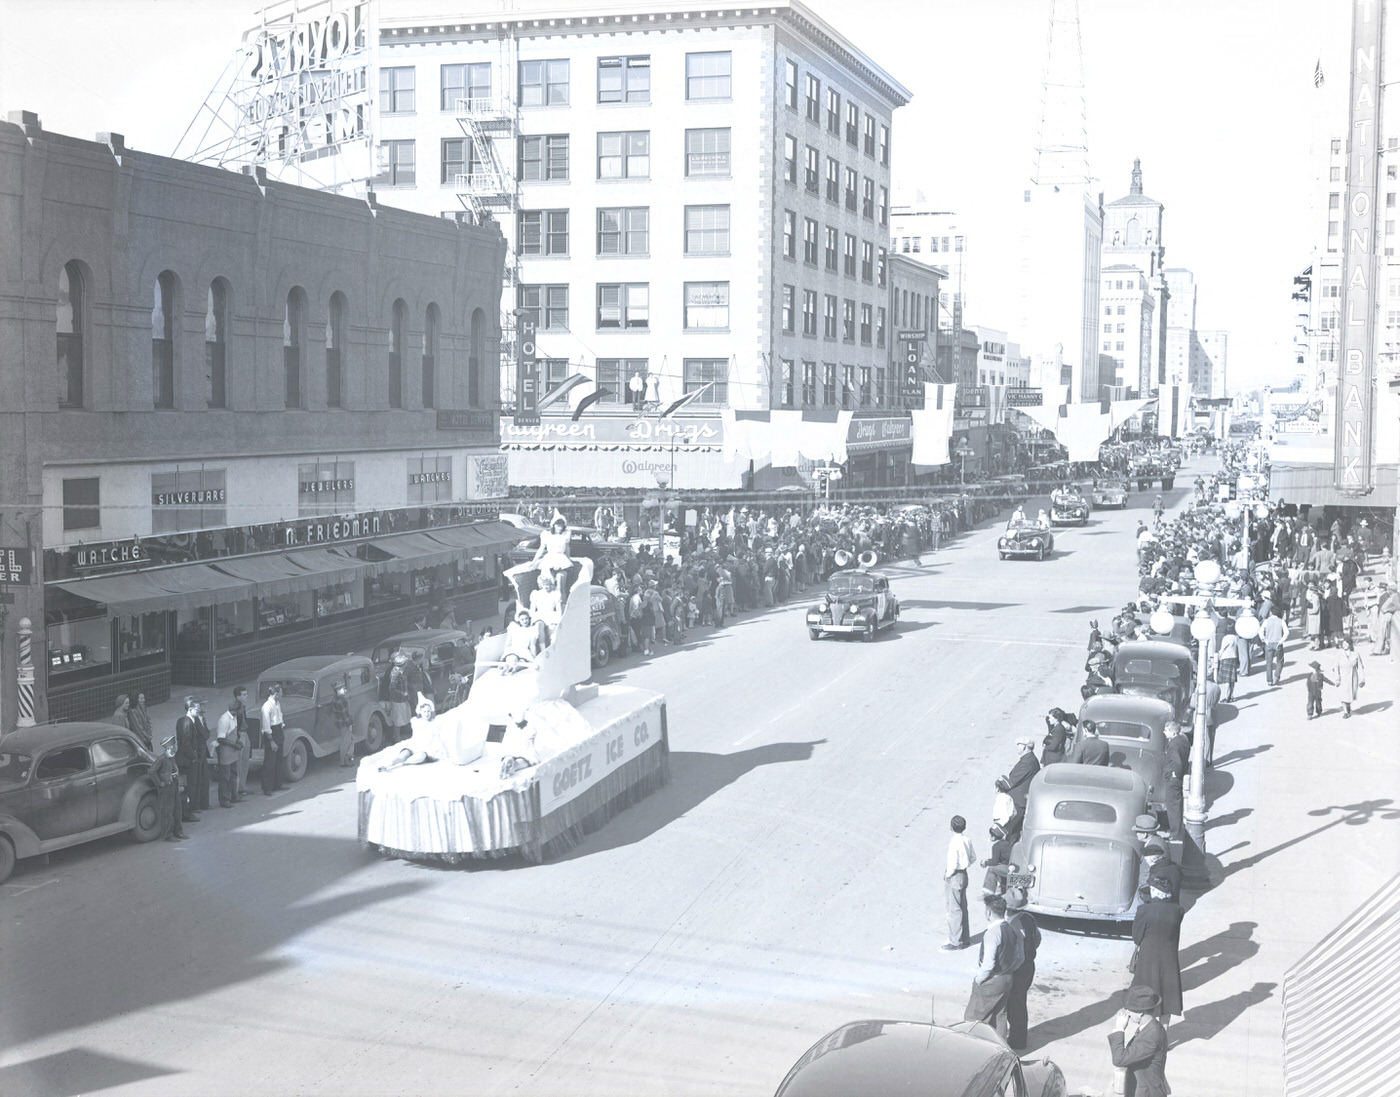 Goetz Ice Company Parade Float, 1941